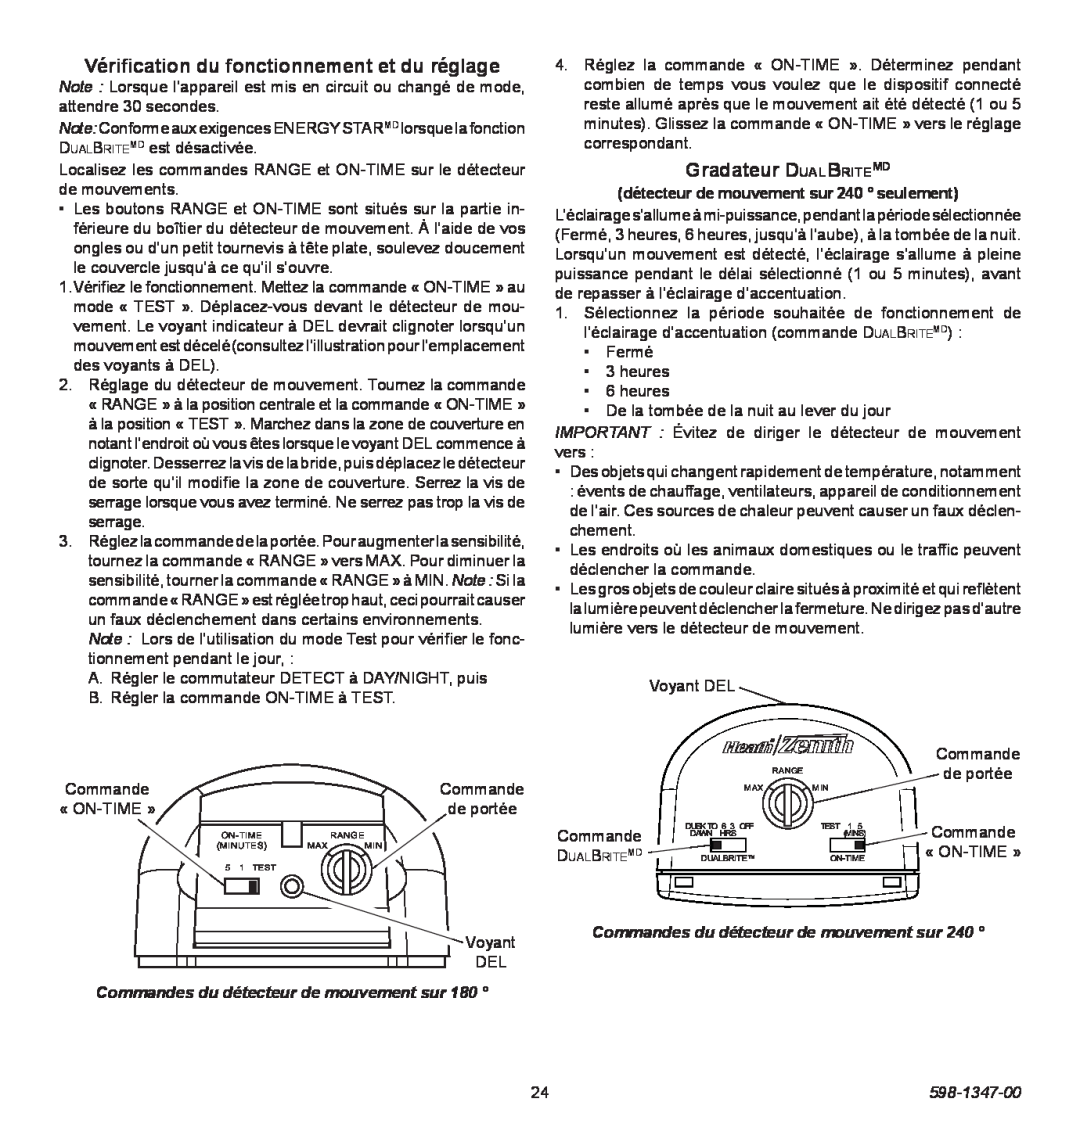 Heath Zenith 598-1347-00 operating instructions Vérification du fonctionnement et du réglage, Gradateur DualBriteMD 